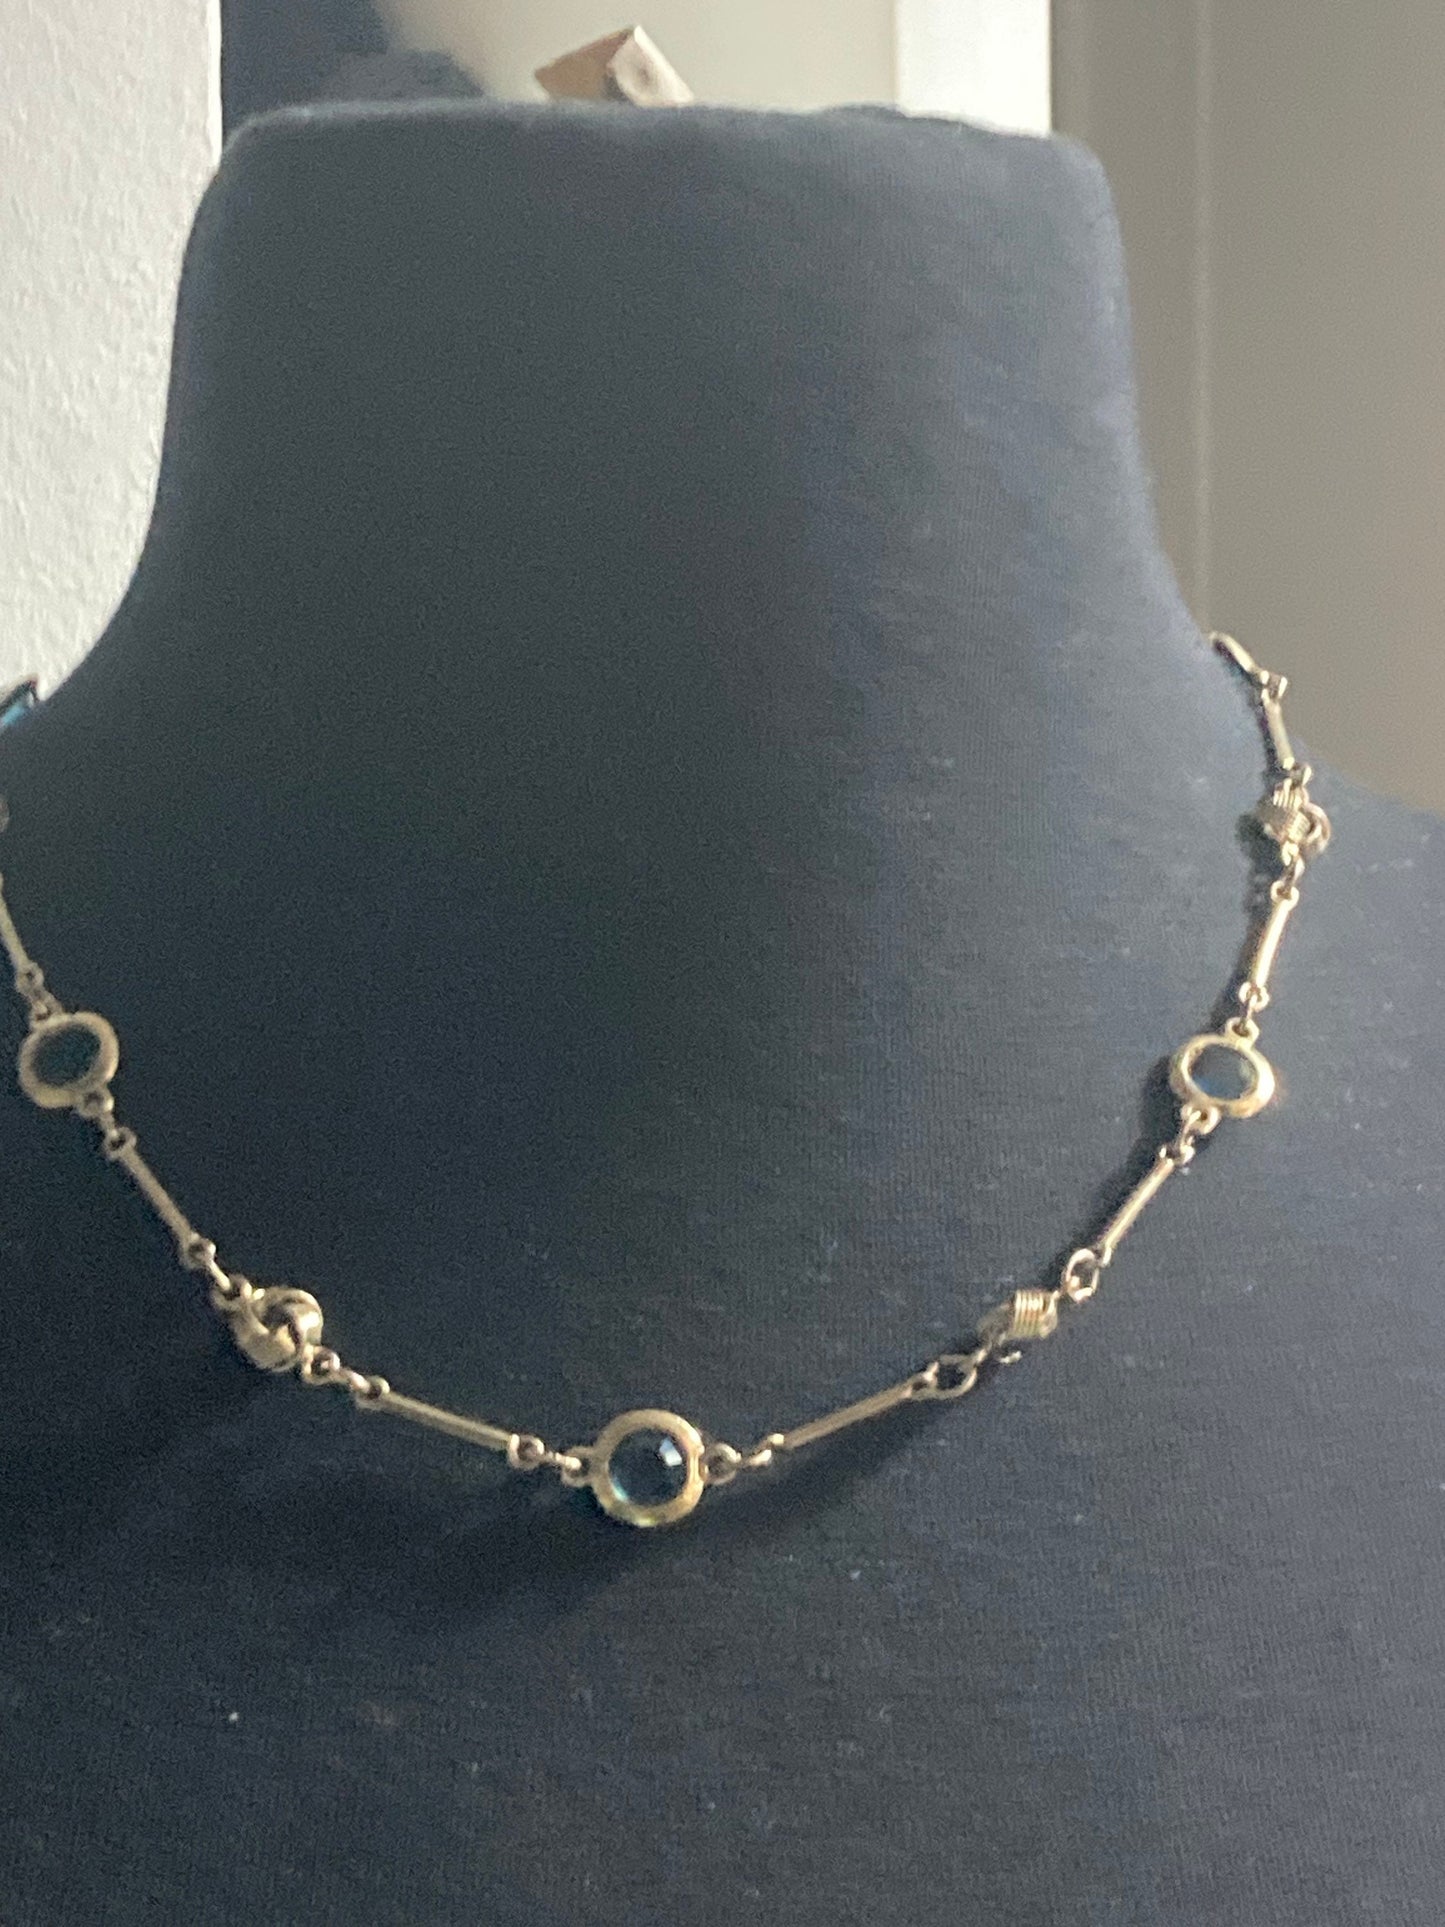 Rivière bezel set blue glass vintage gold tone chain link knot necklace 54cm